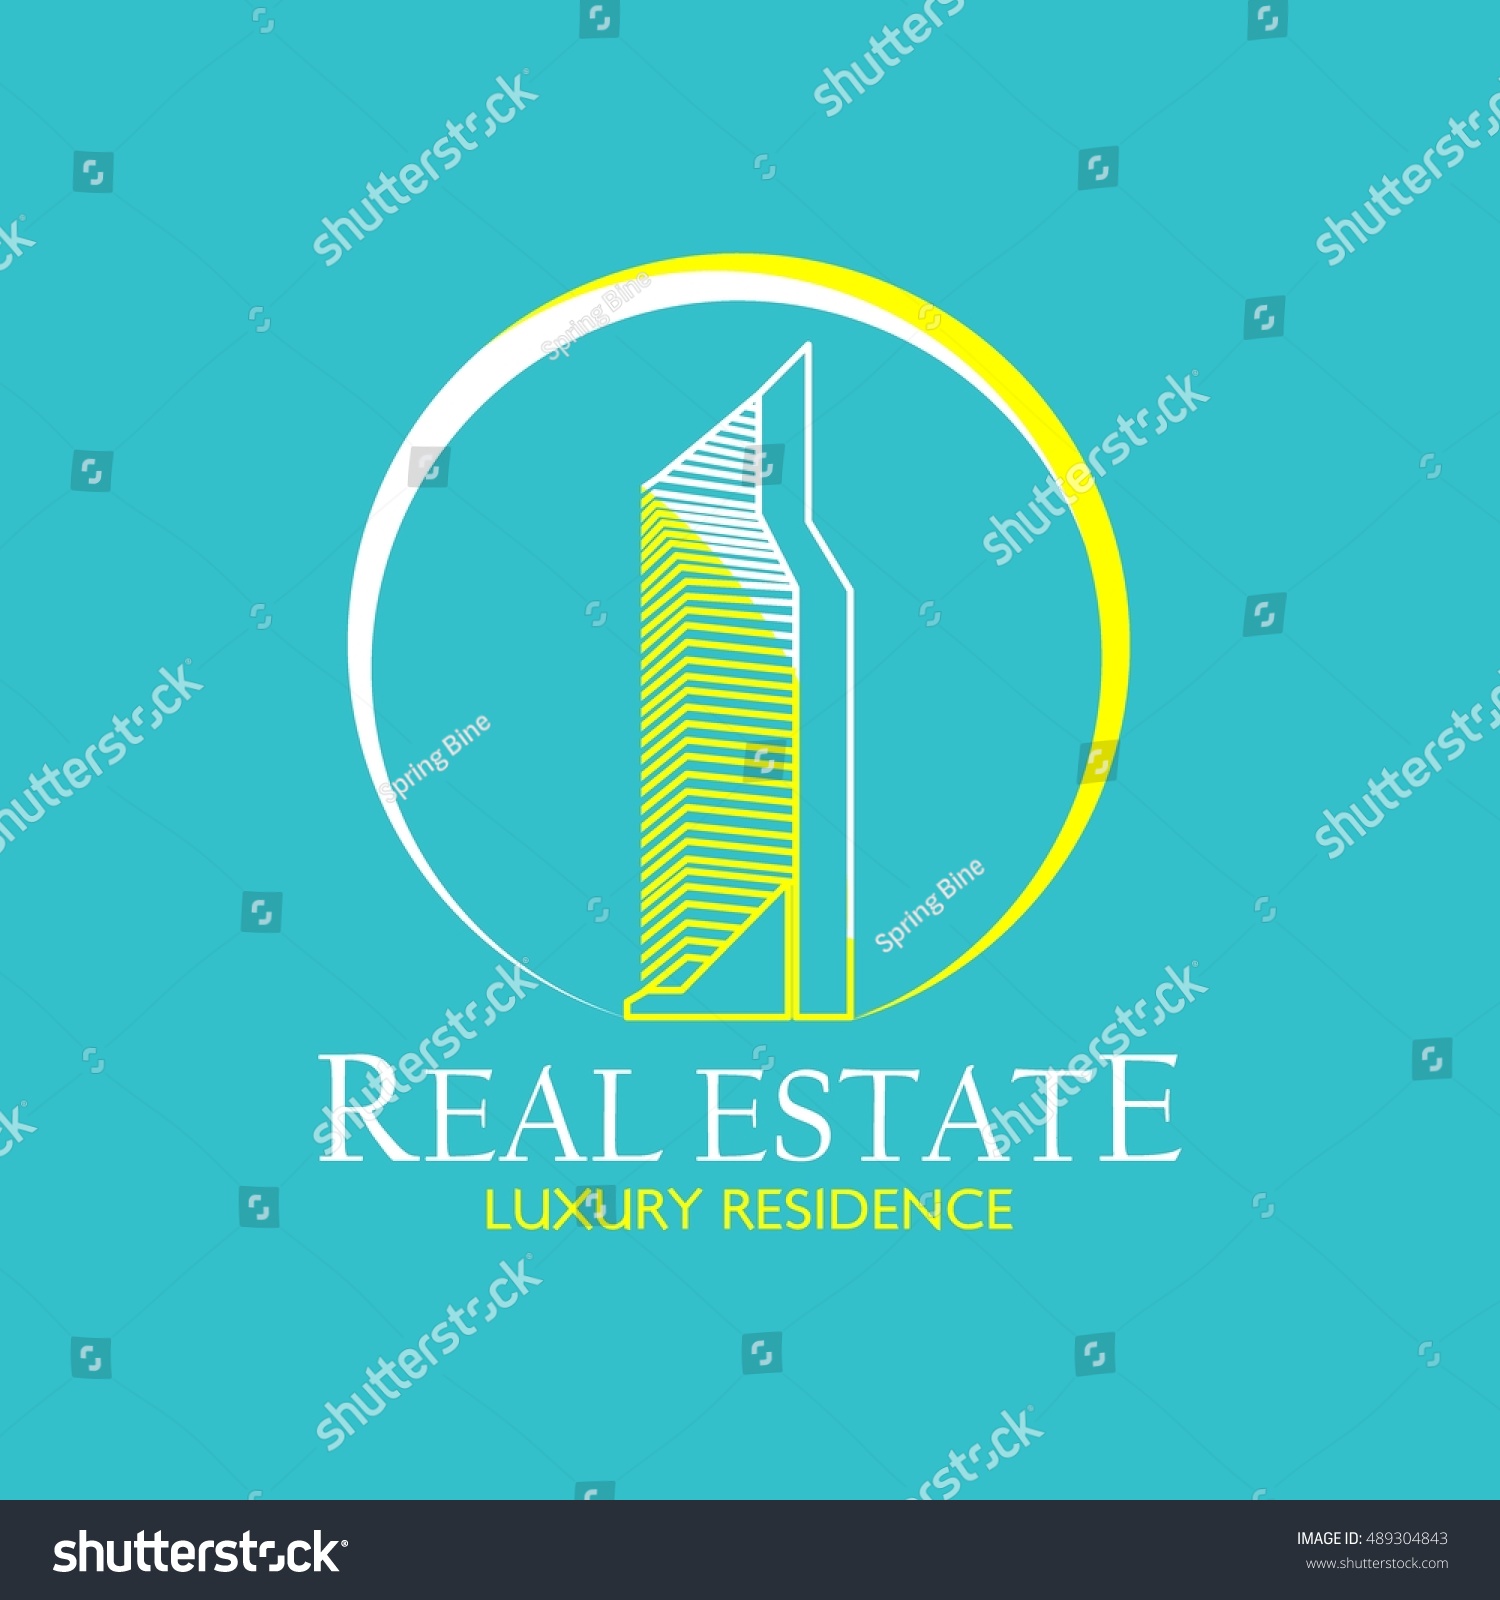 Real Estate Logo Design Template Creative Royalty Free Stock Vector 489304843 3542